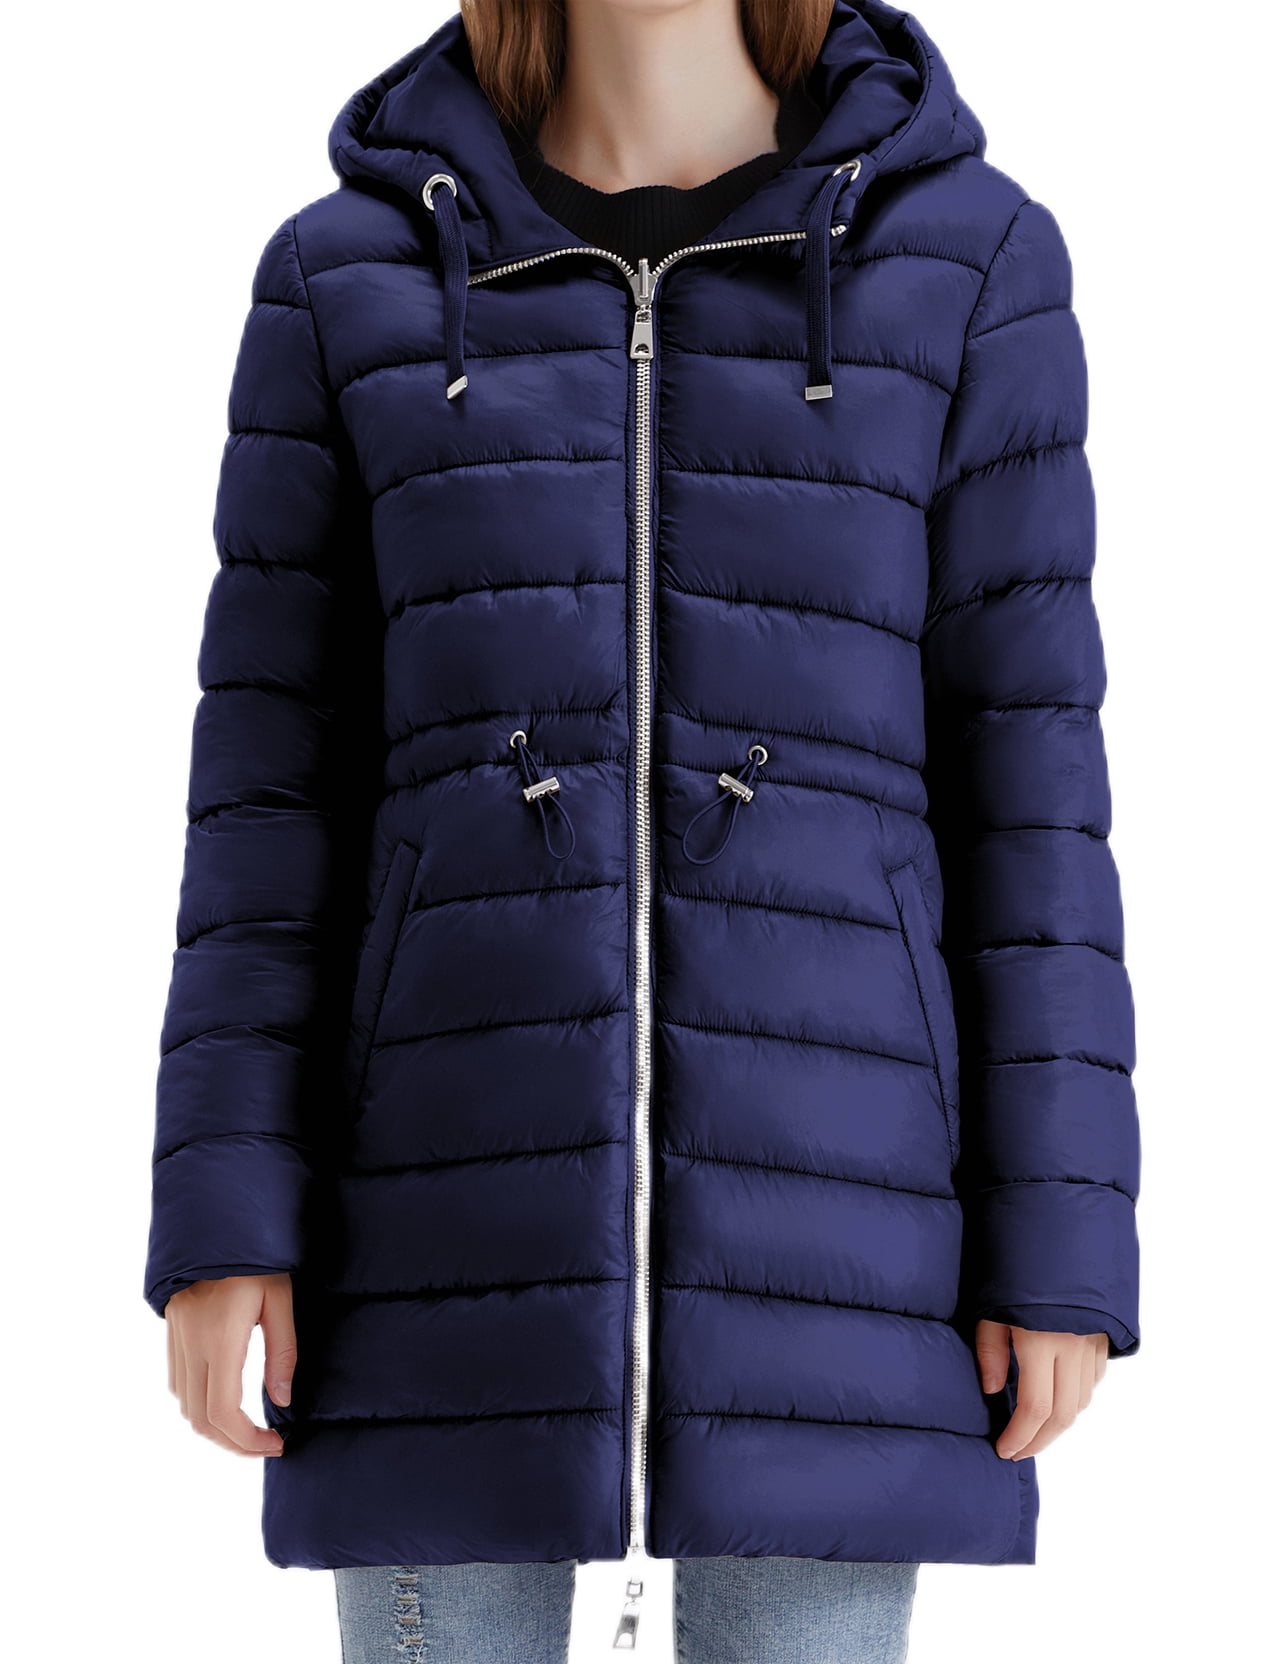 LEZMORE Cuff Men\'s Winter Warm Jacket Lapel Coat Furry Coat Heavy M-3XL Jacket